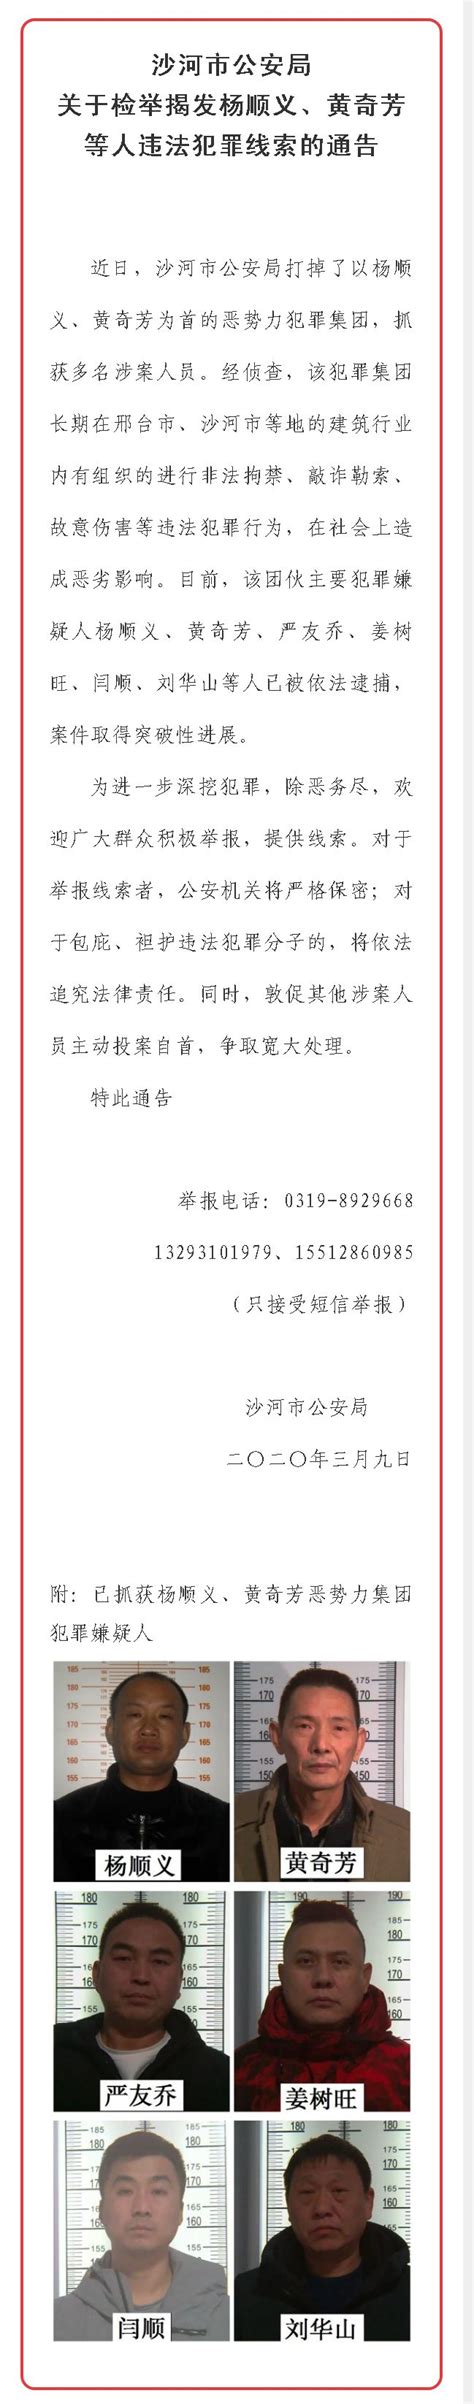 邢台123：沙河市公安局关于检举揭发杨顺义、黄奇芳等人违法犯罪线索的通告